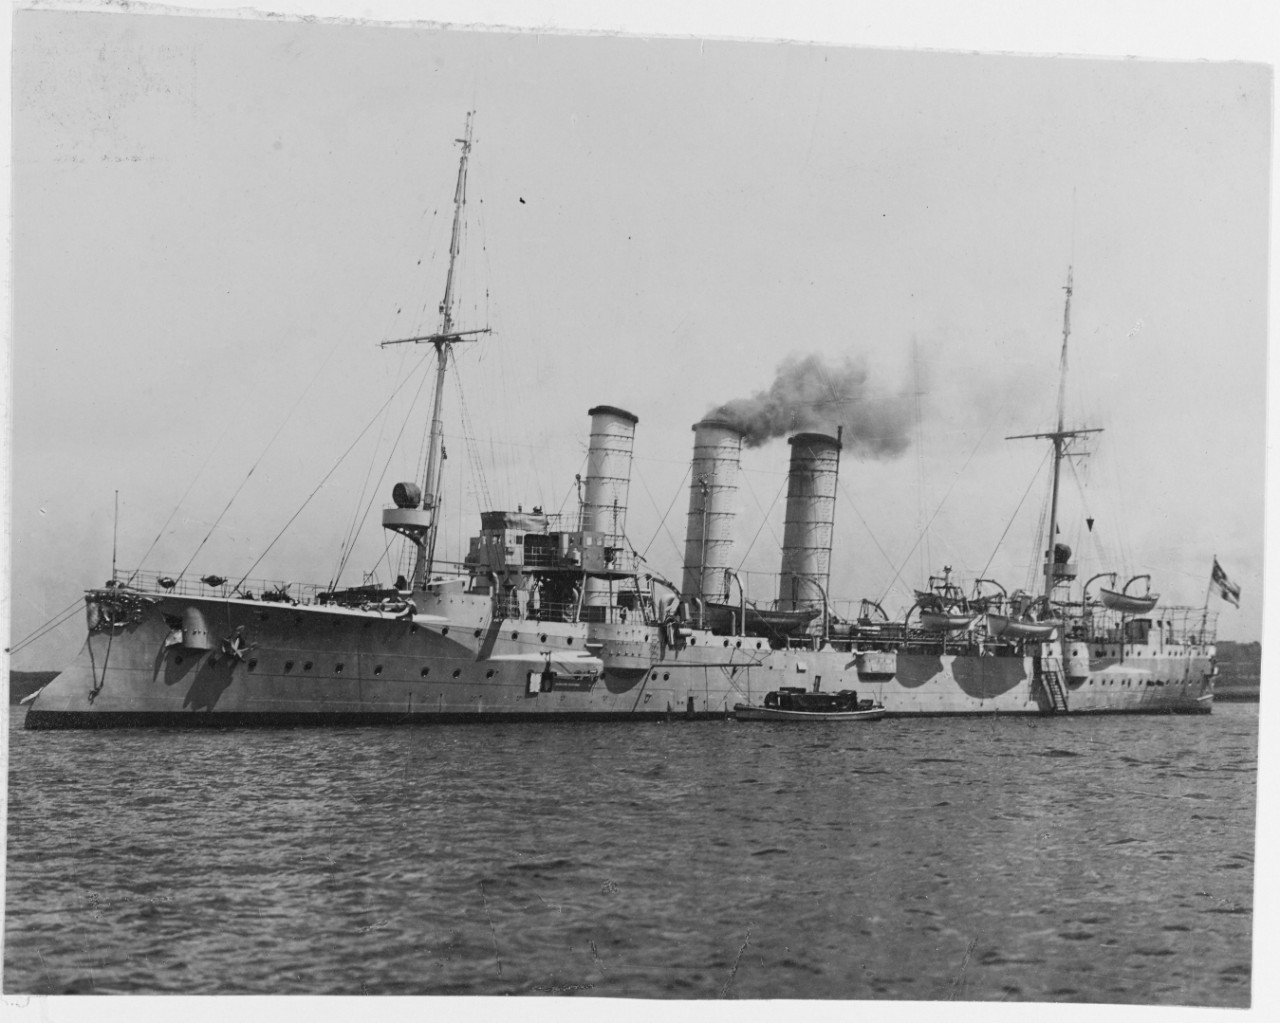 MÜNCHEN (German light cruiser, 1904-1920)